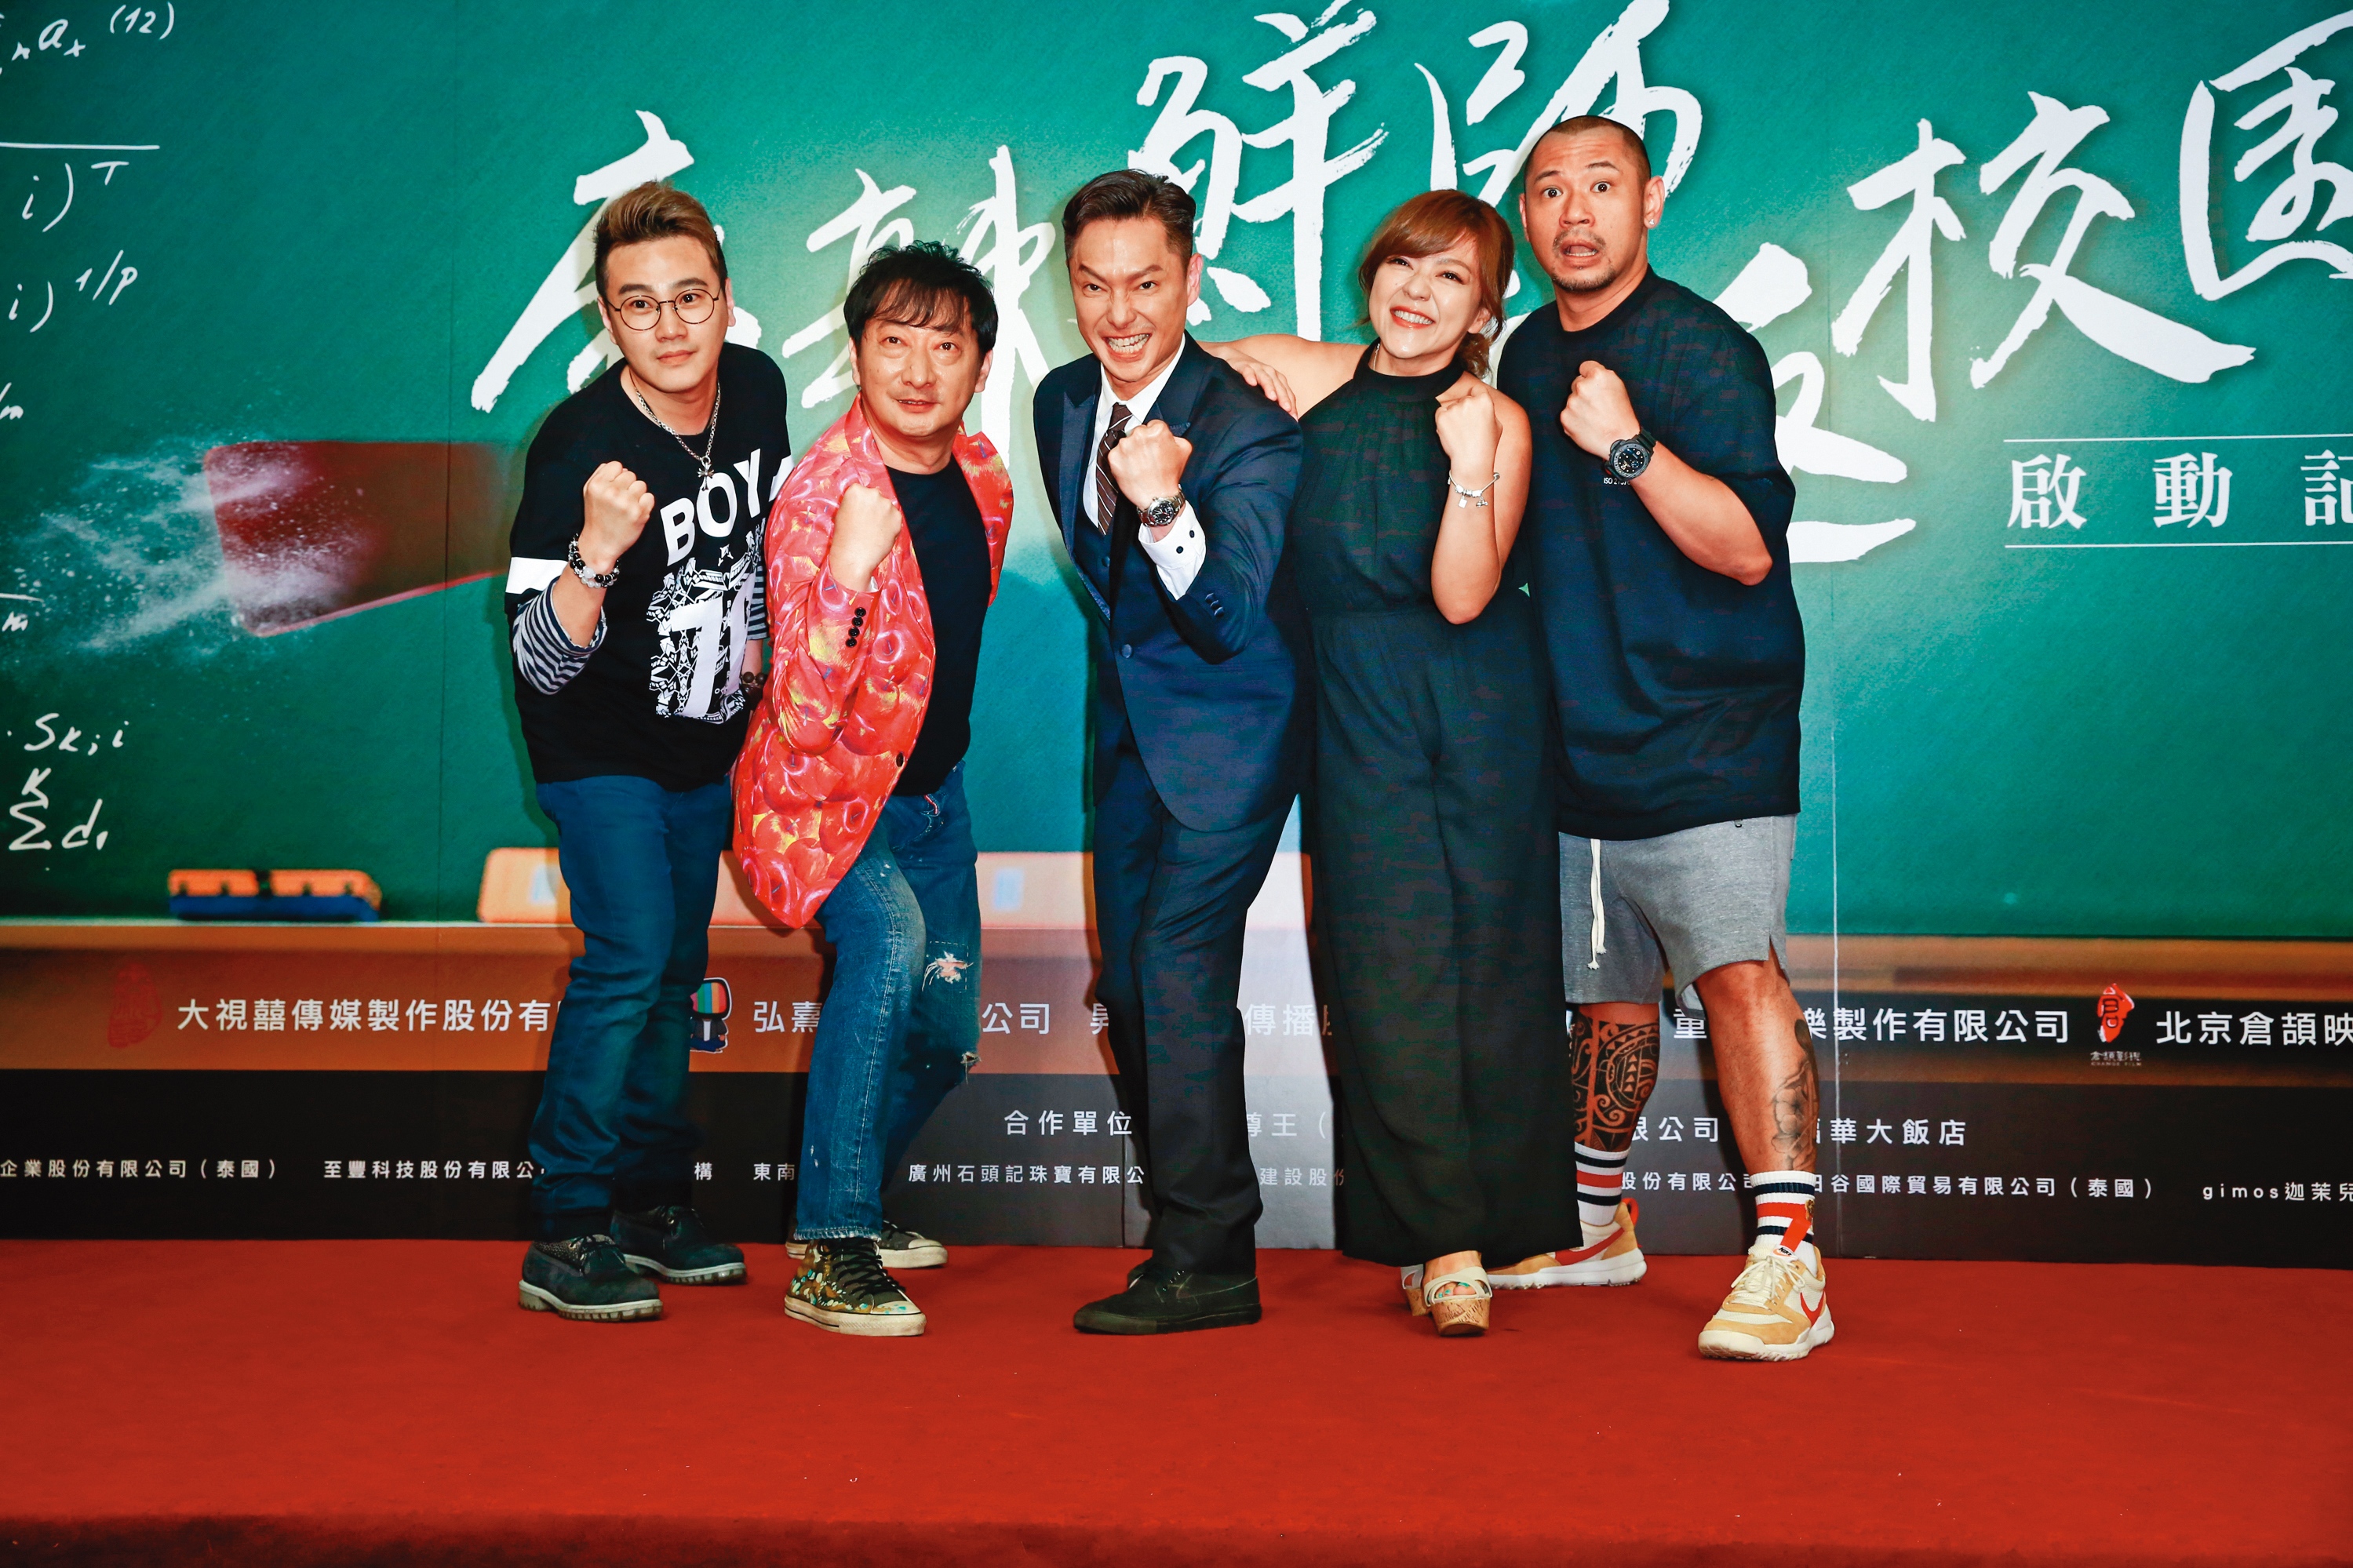 金剛（右一）2002年以《麻辣鮮師》中的「金剛」一角走紅，2017年又再度翻拍電影版。左起為綠茶、九孔、謝祖武與杜詩梅